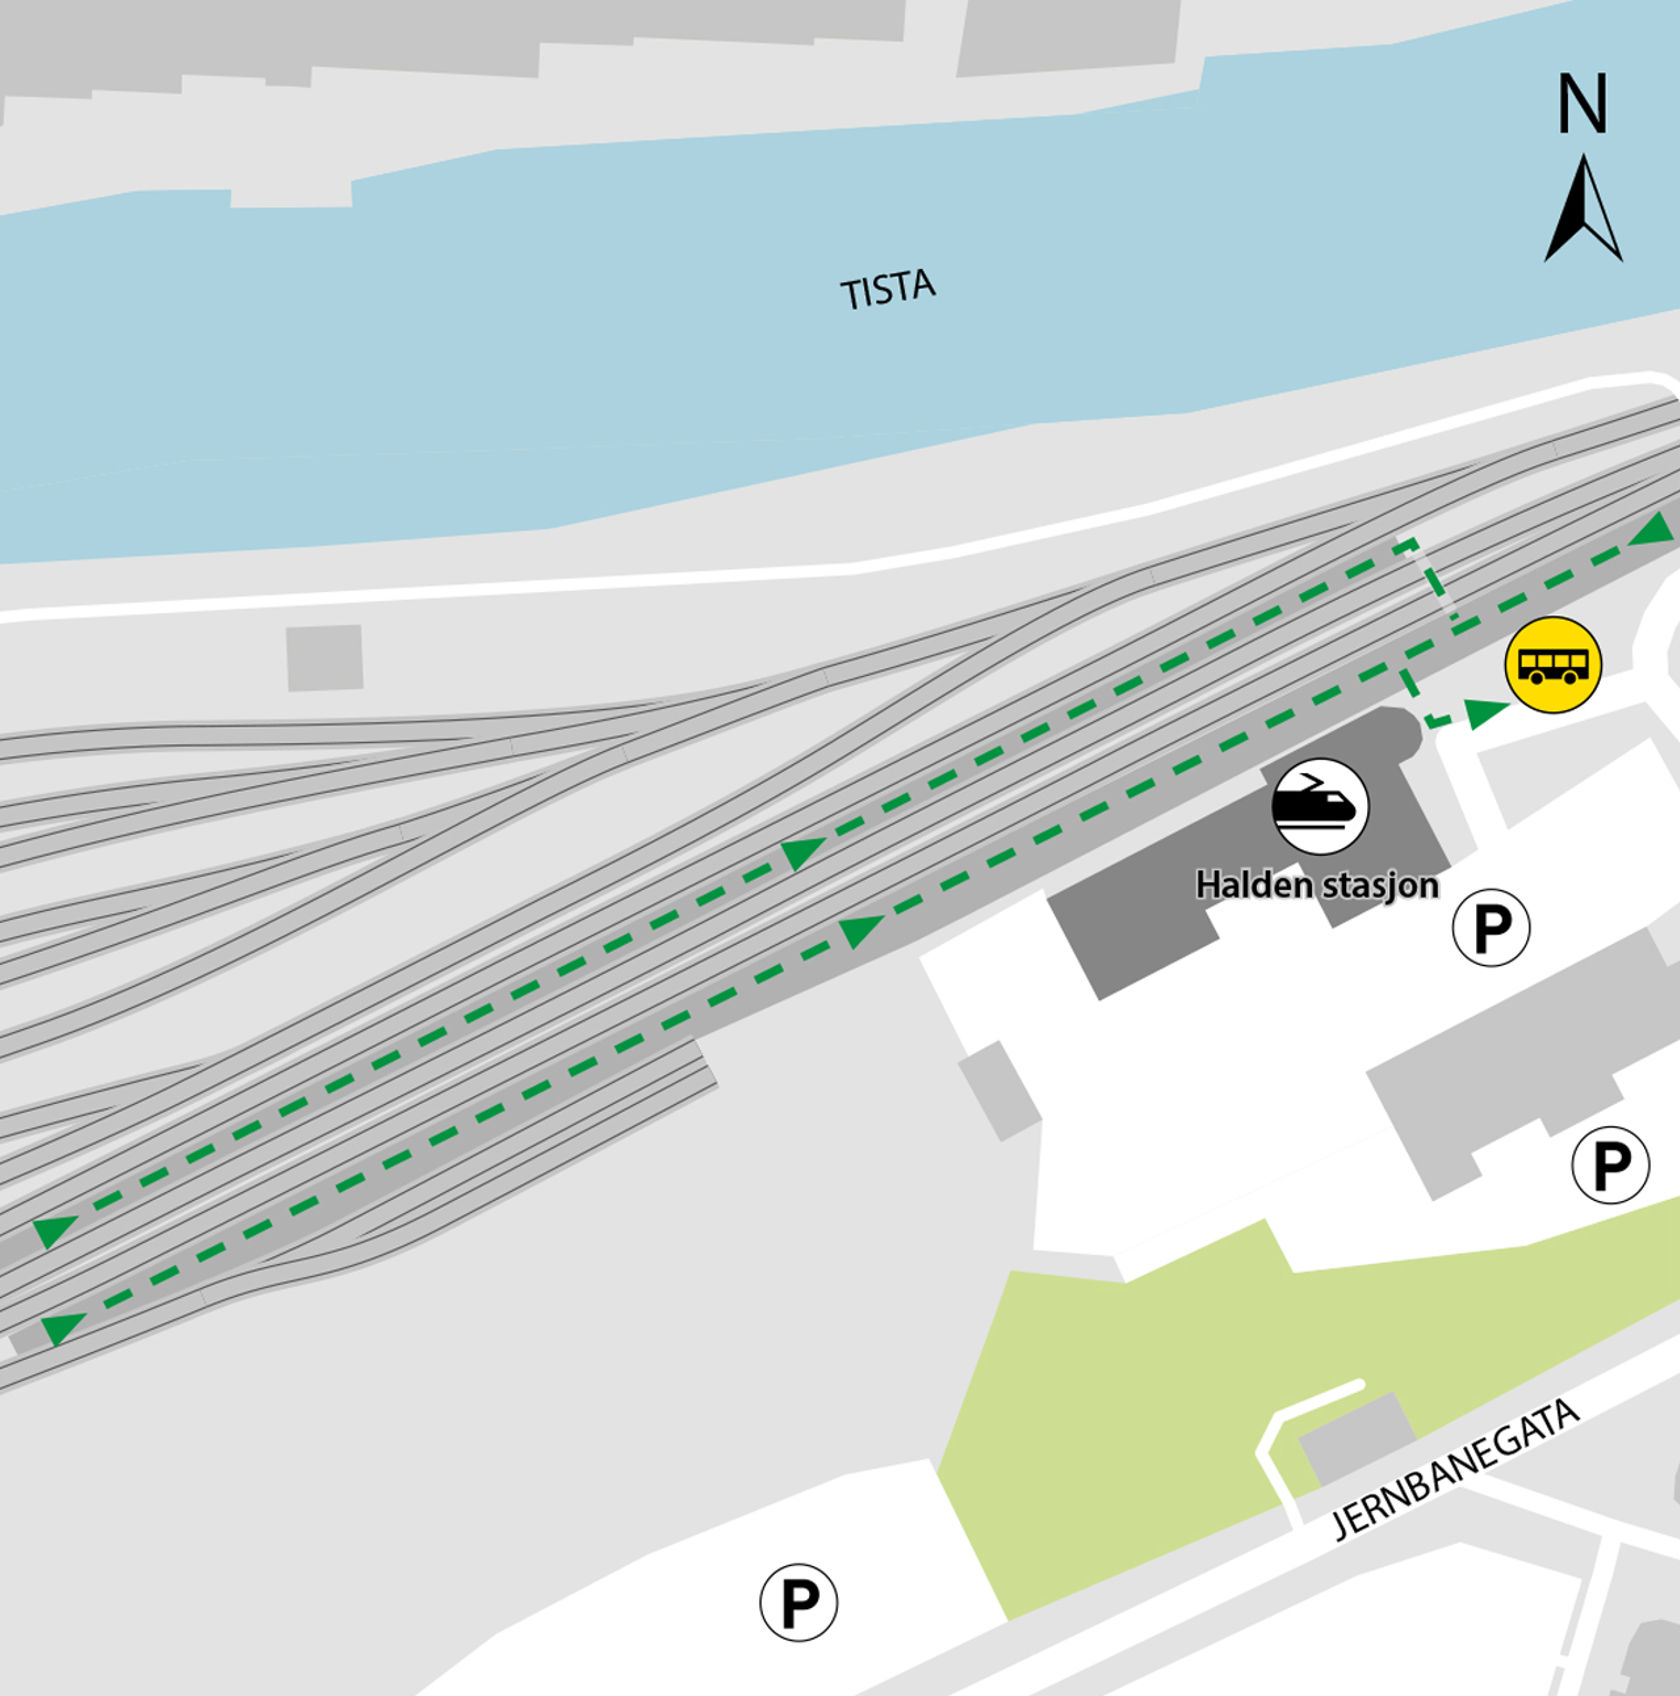 Kartet viser at bussene kjører fra bussholdeplassen Halden stasjon.